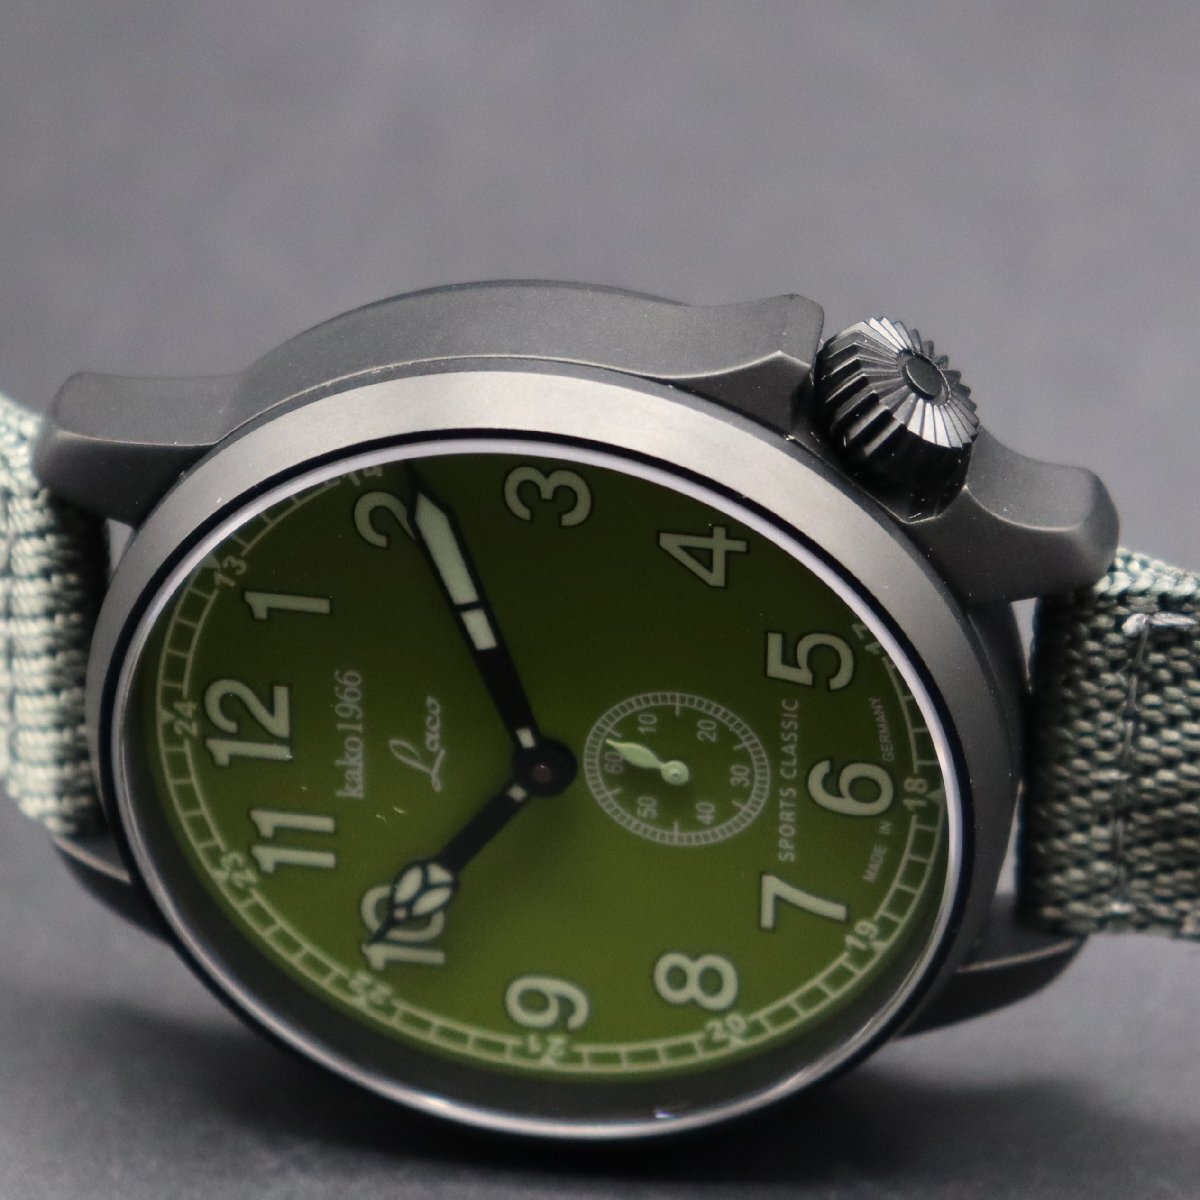 LACO ラコ KAKO 1966 スポーツクラシック 自動巻き ラウンド スモールセコンド グリーン文字盤 ドイツ製 純正ベルト メンズ腕時計_画像6